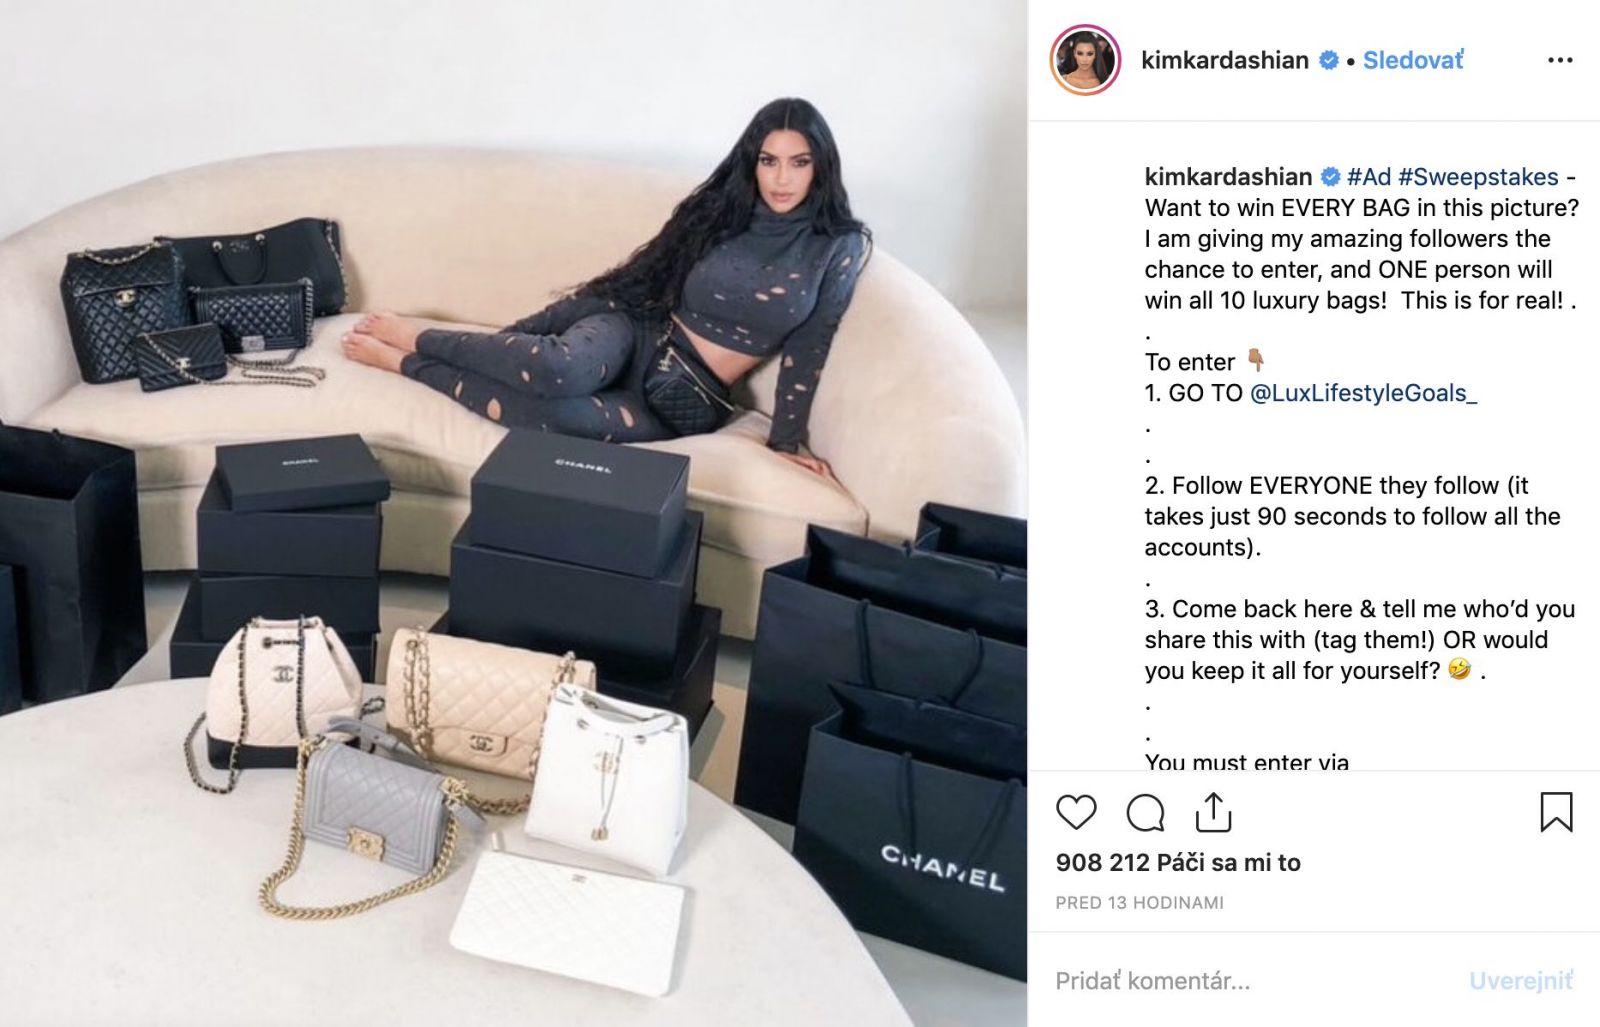 Najdrahší príspevok v histórii Instagramu? Kim Kardashian zarobila za jednu fotku 3,5 milióna dolárov